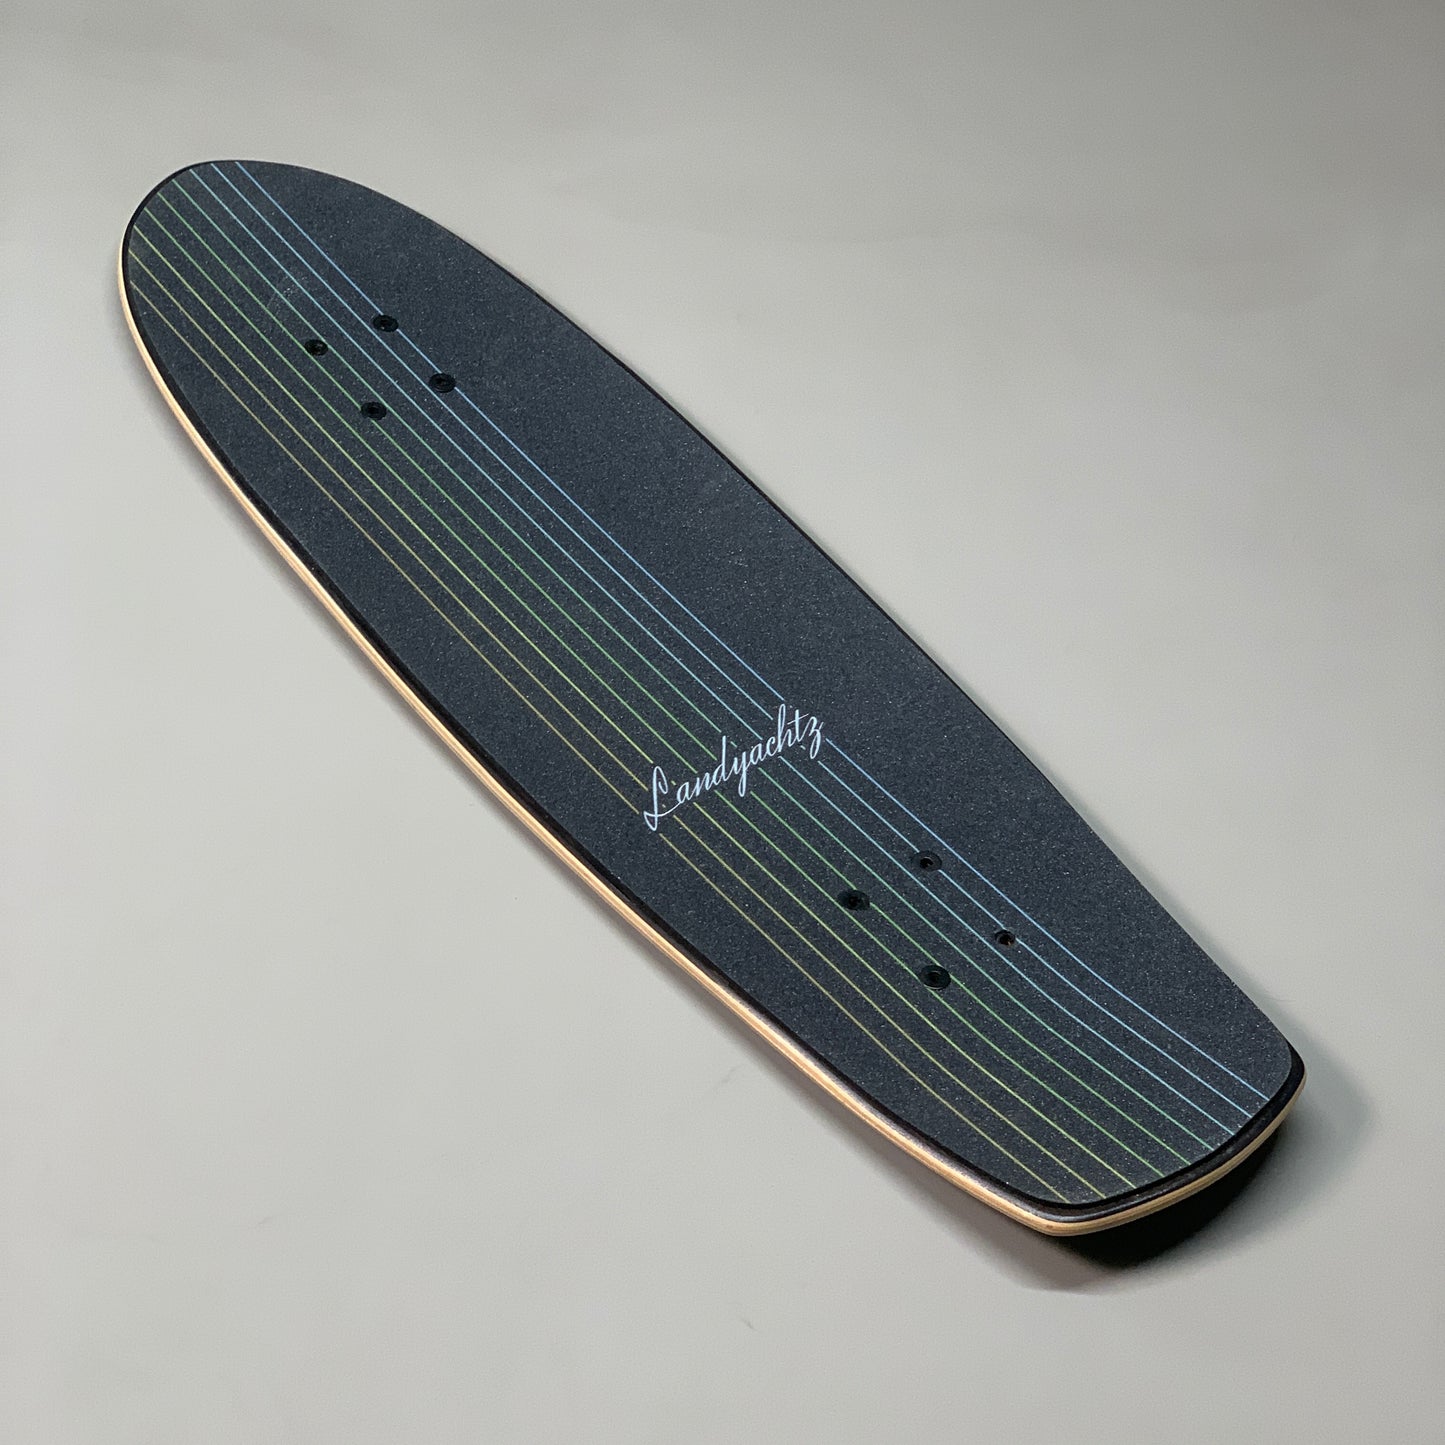 LANDYACHTZ Cruiser Longboard/Skateboard Butter Black Lines Deck 31"x9" (New Other)